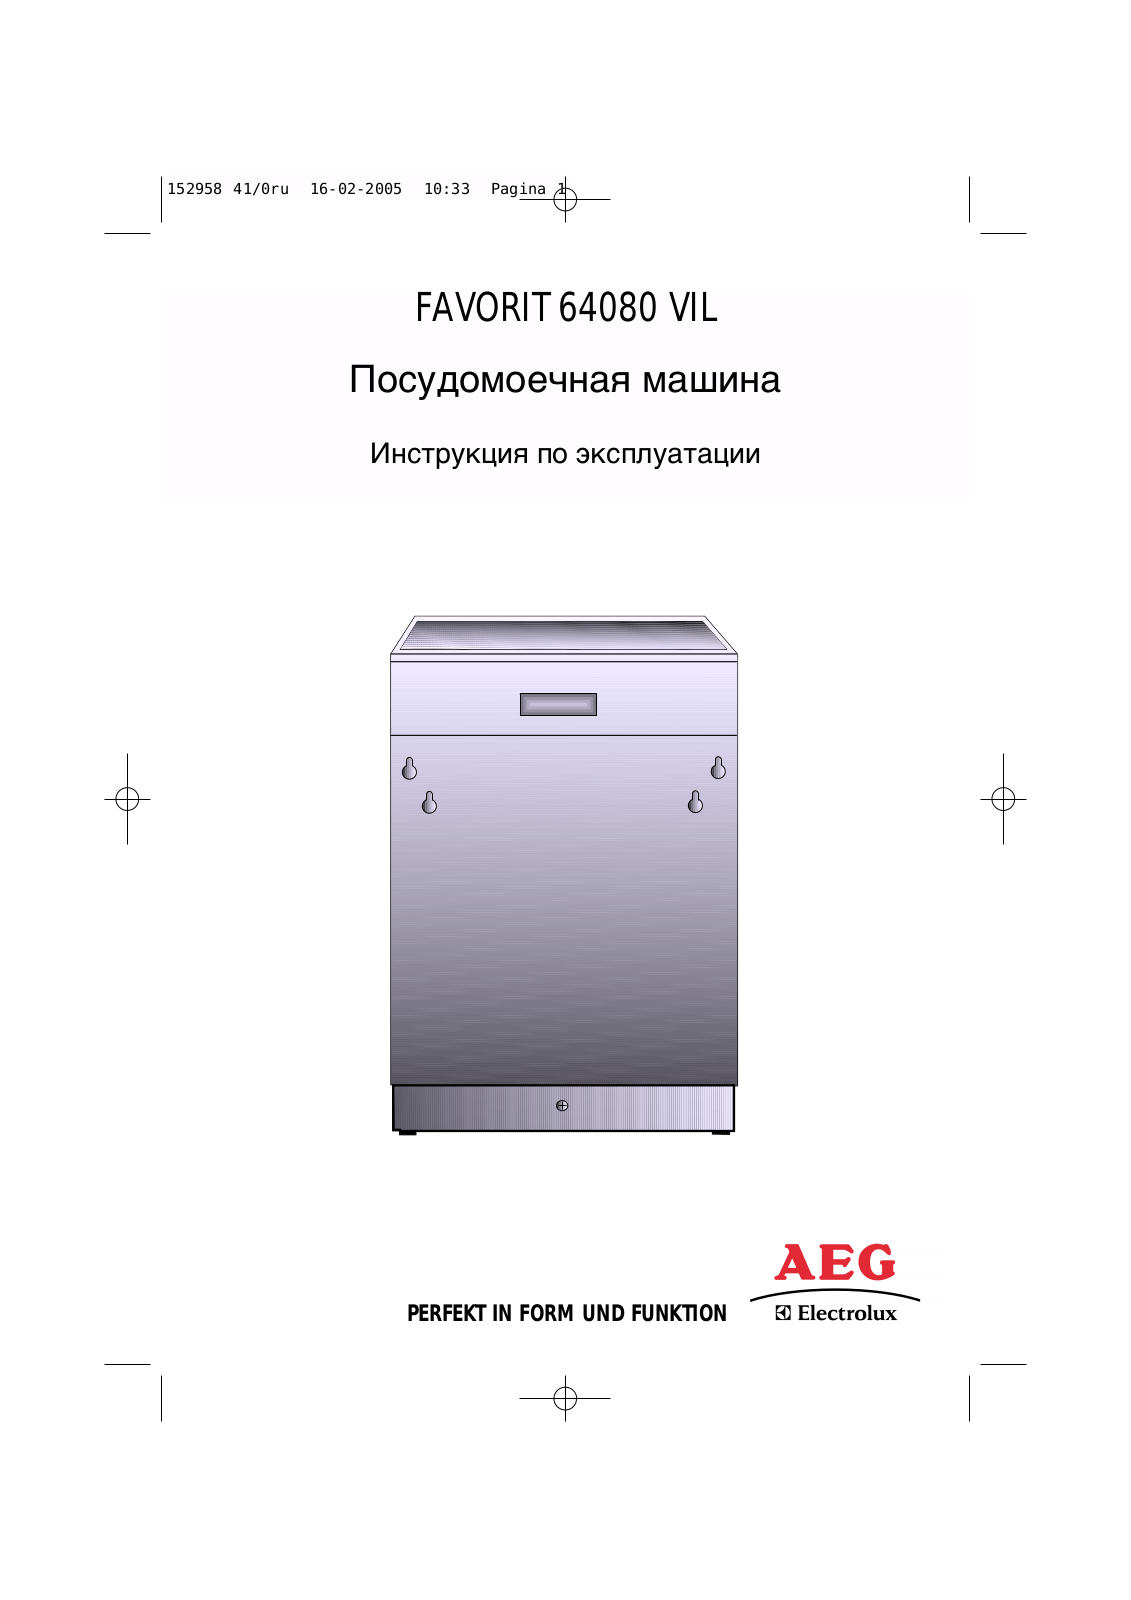 Aeg FAVORIT 64080 VIL User Manual